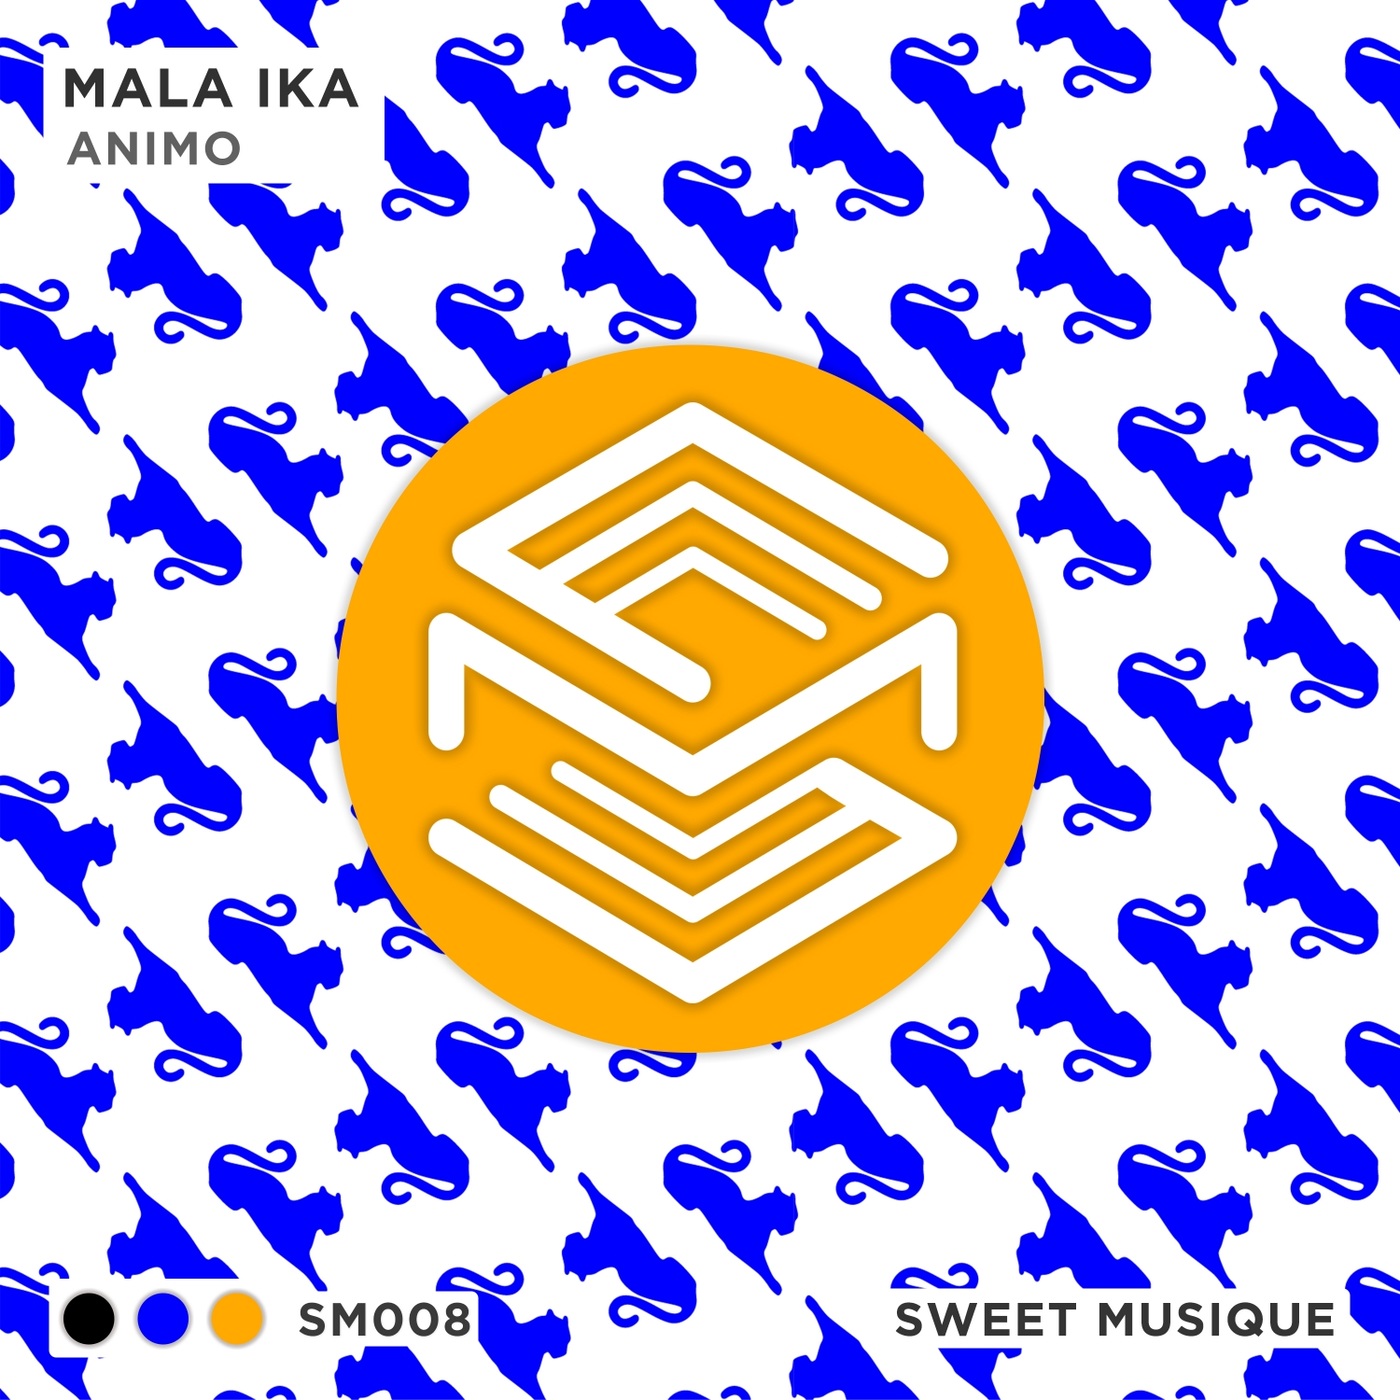 Mala Ika - Animo / Sweet Musique